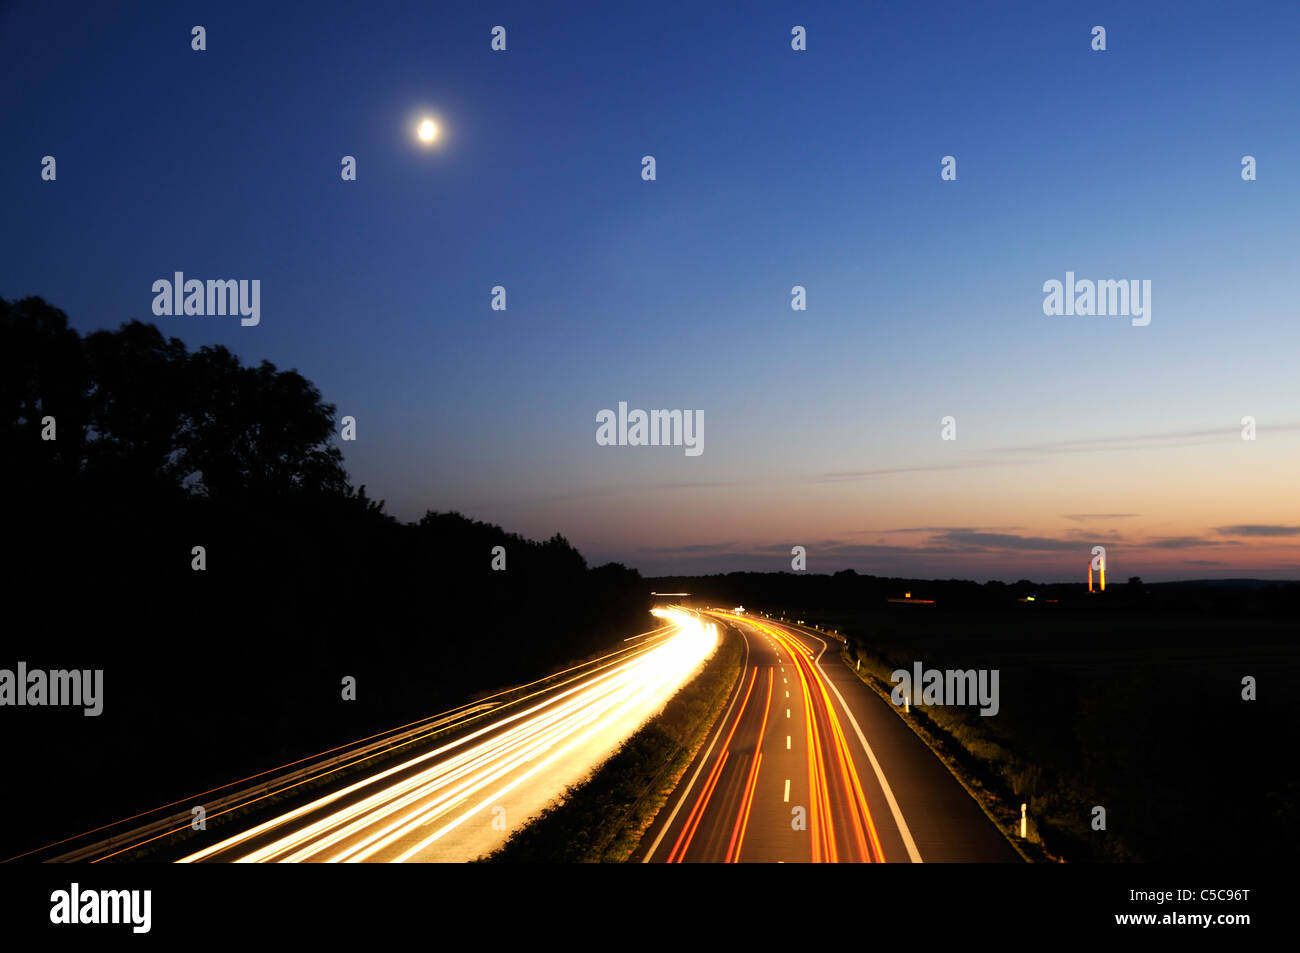 Kurve auf deutschen Autobahnen und Bewegung erlauben Autolichter - Langzeitbelichtung Nacht Schuss Stockfoto